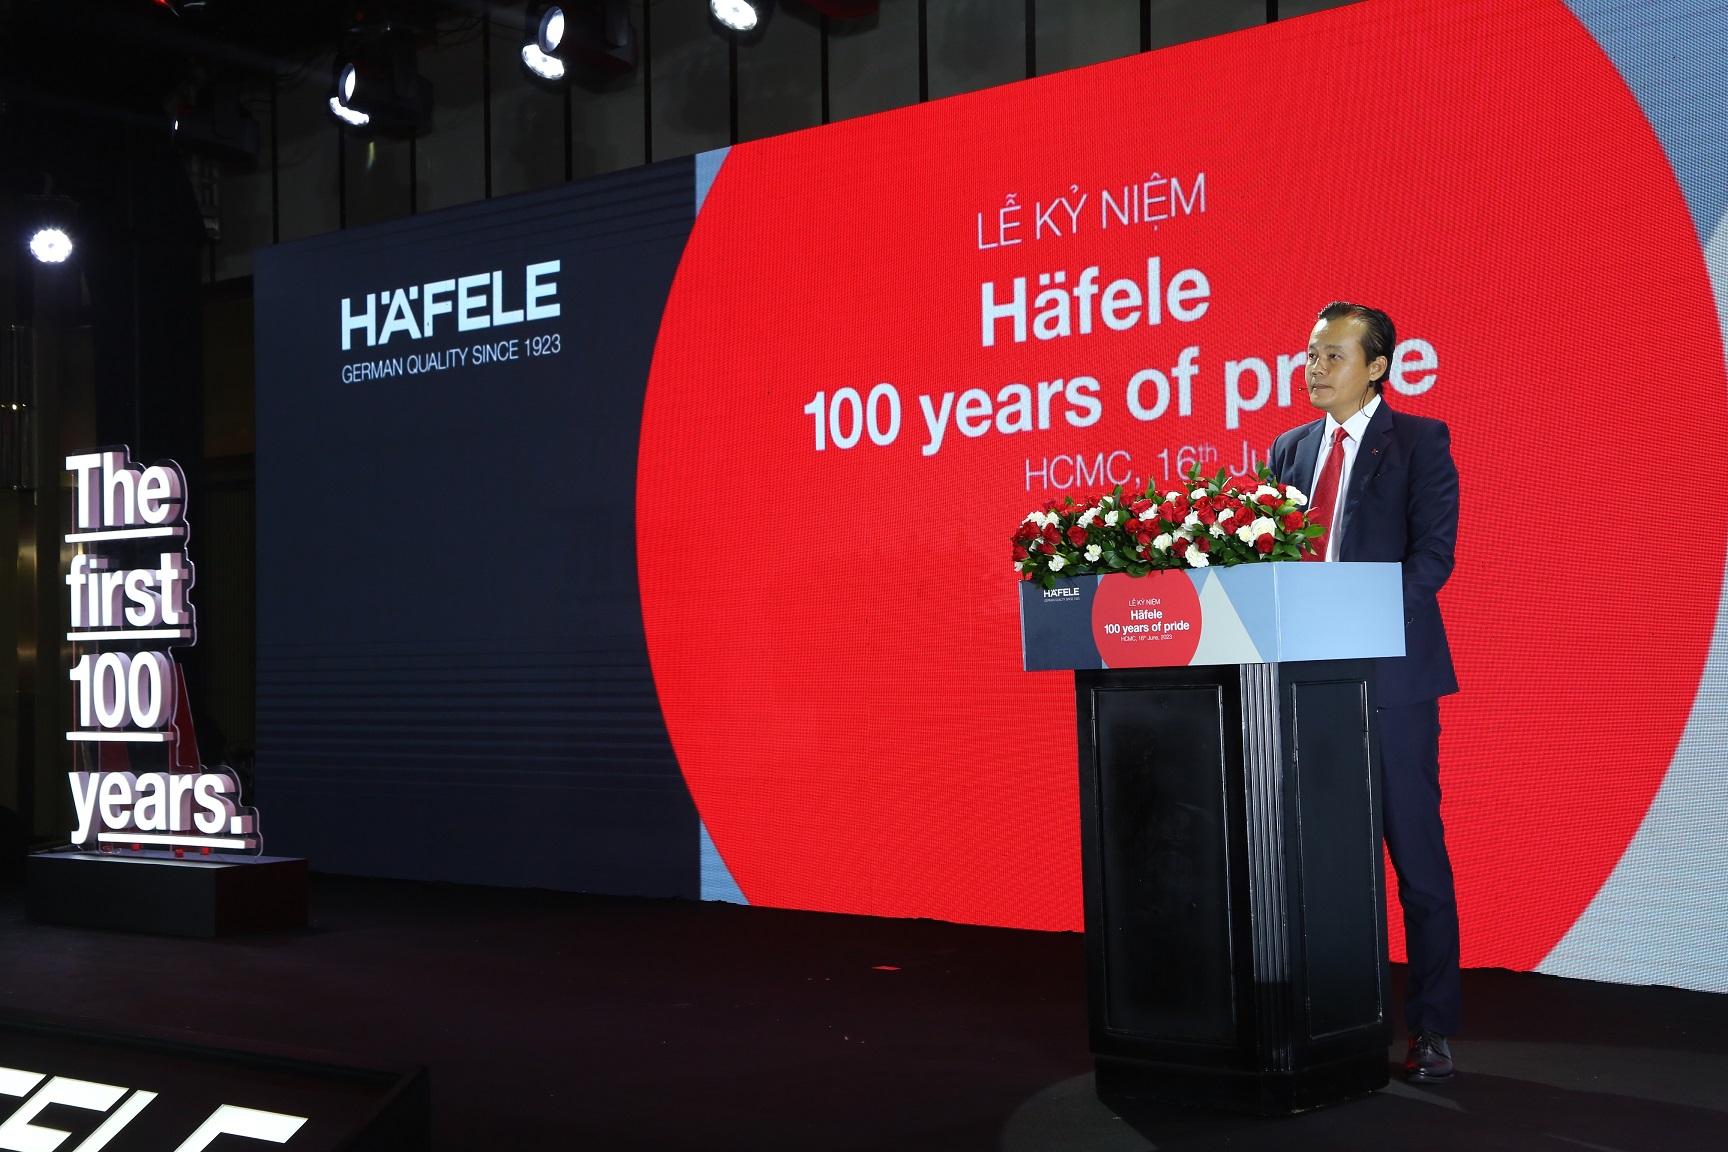 Häfele kỷ niệm 100 năm thành lập, nhiều hoạt động trên toàn cầu - Ong Mai Kim Hoang Giam doc Dieu hanh Hafele Viet Nam dang phat bieu